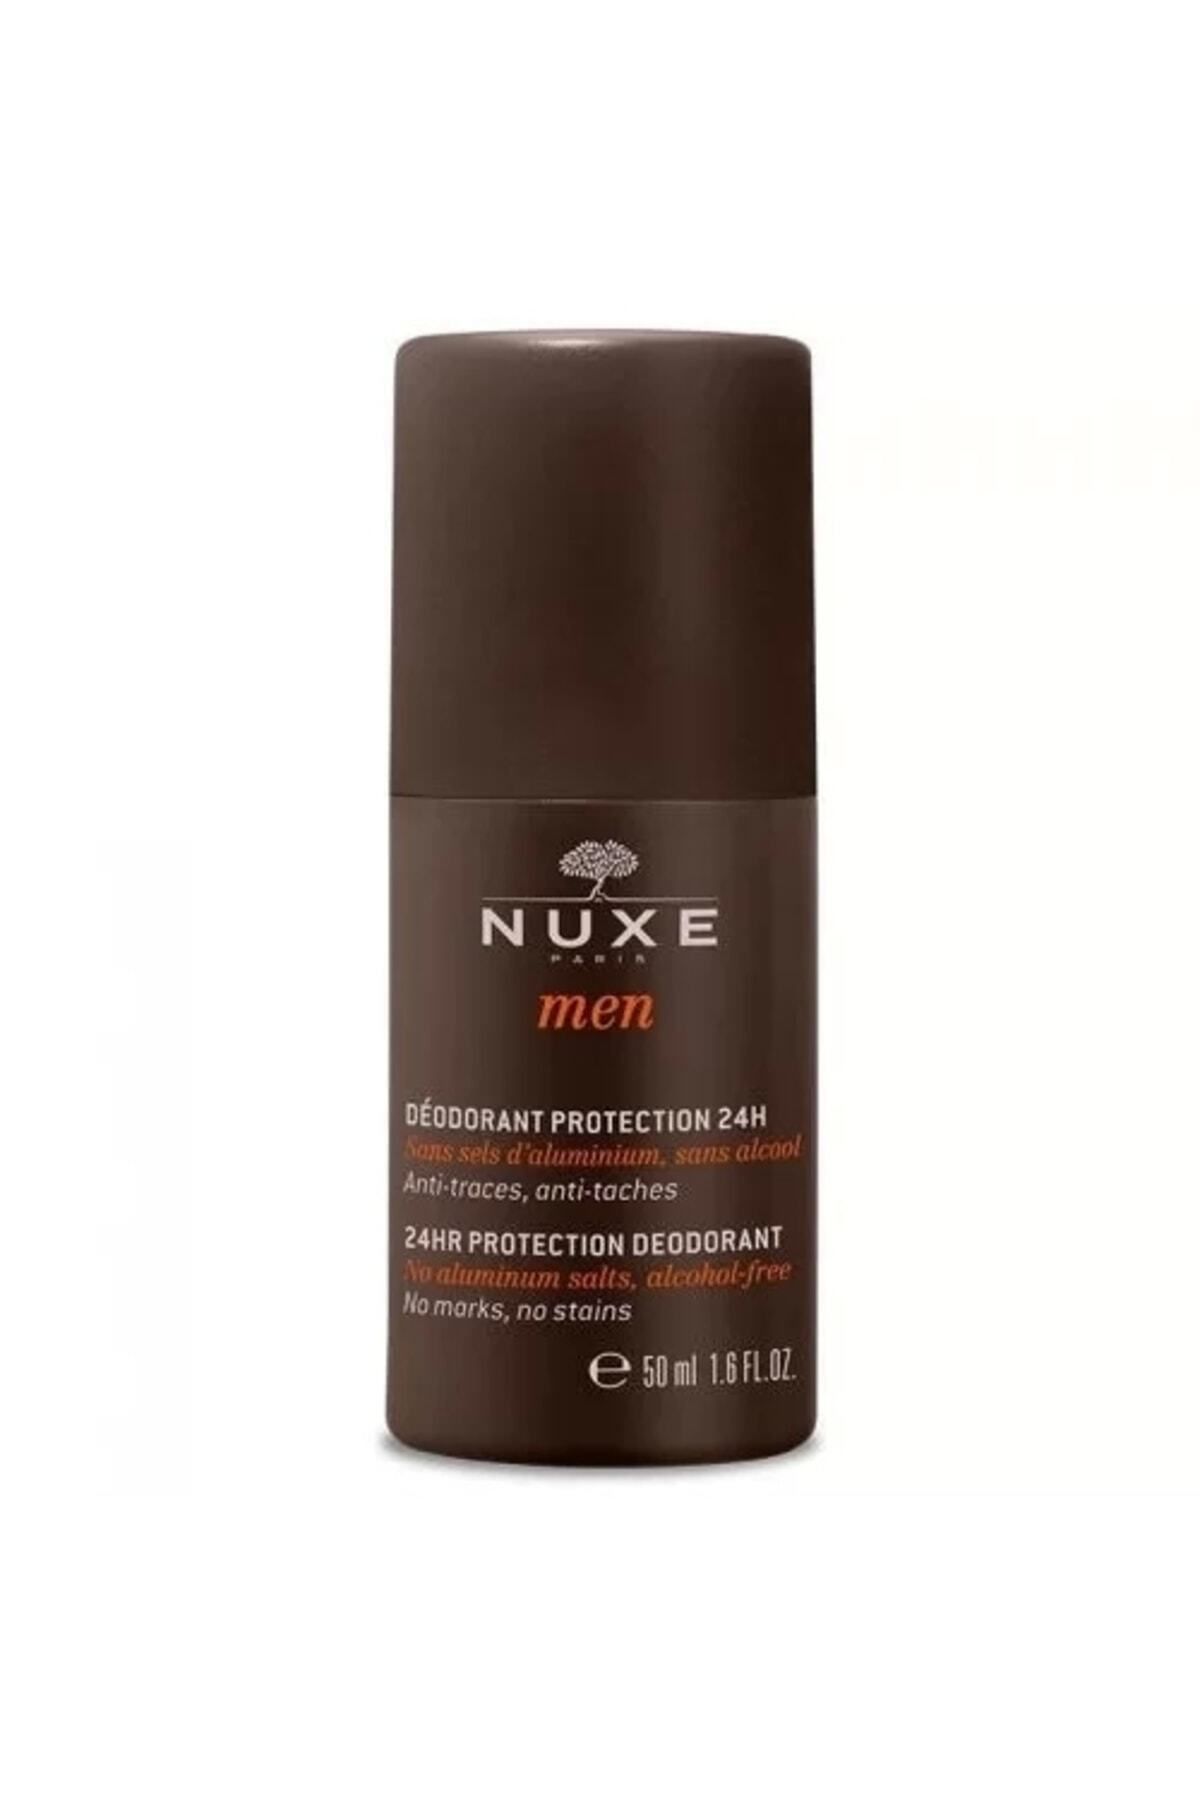 Nuxe Erkeklere Özel Terlemenin Verdiği Lekelere Karşı Bakım Sağlayan Men Deodorant 50 ml